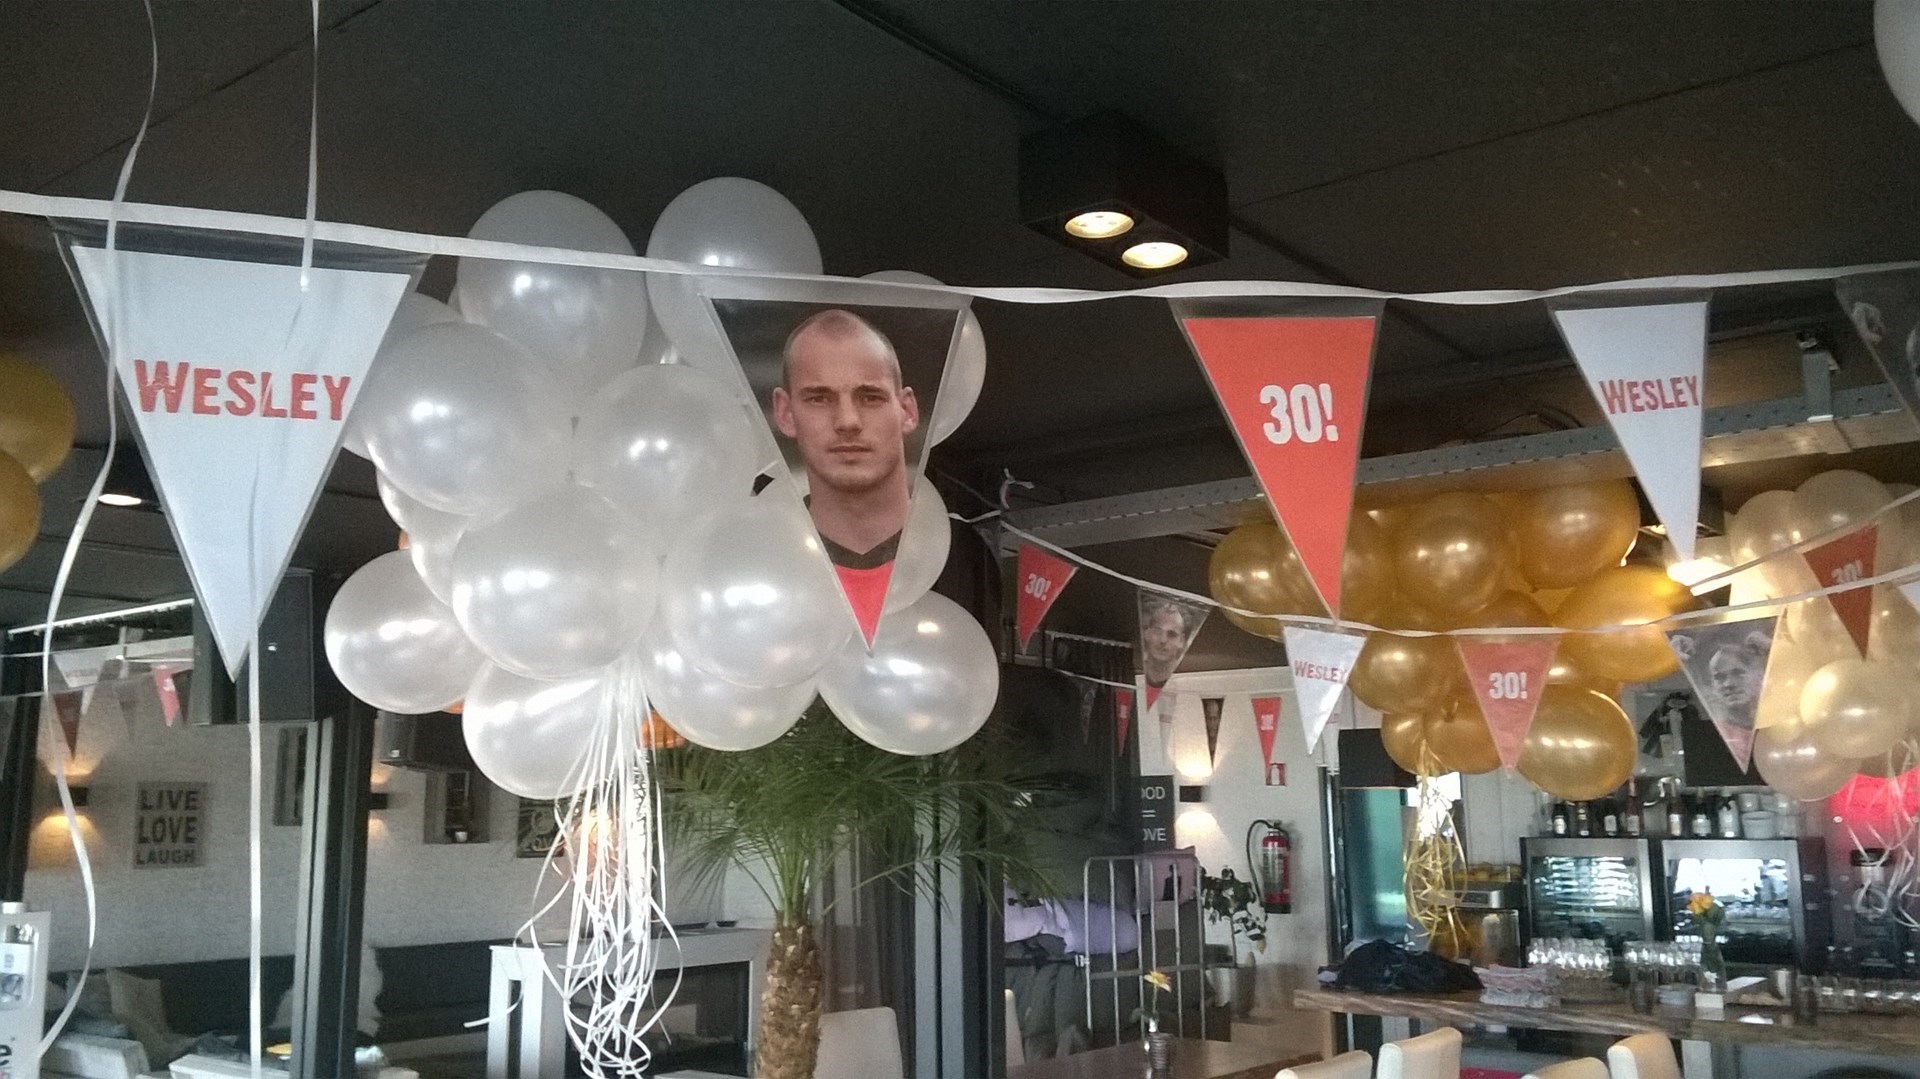 helium ballonnen tegen plafond voor verjaardag van Wesley Sneijders Zandvoort aan zee